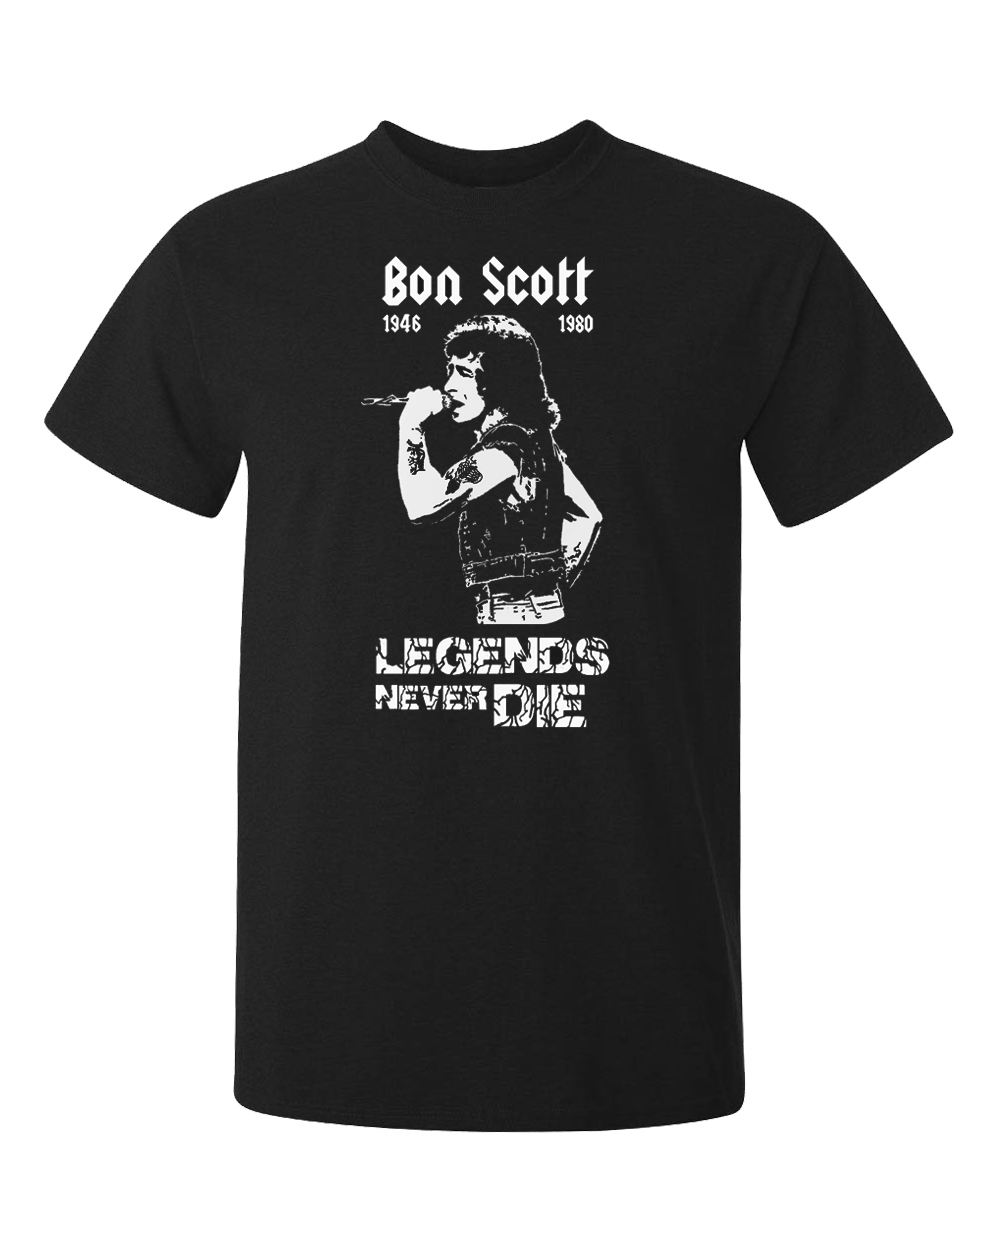 Bon Scott, den ikoniska sångaren i gruppen ac/dc. En legend dör aldrig. Tryckt på en svart t-shirt av bra kvalitet. Passar alla fans i alla åldrar.